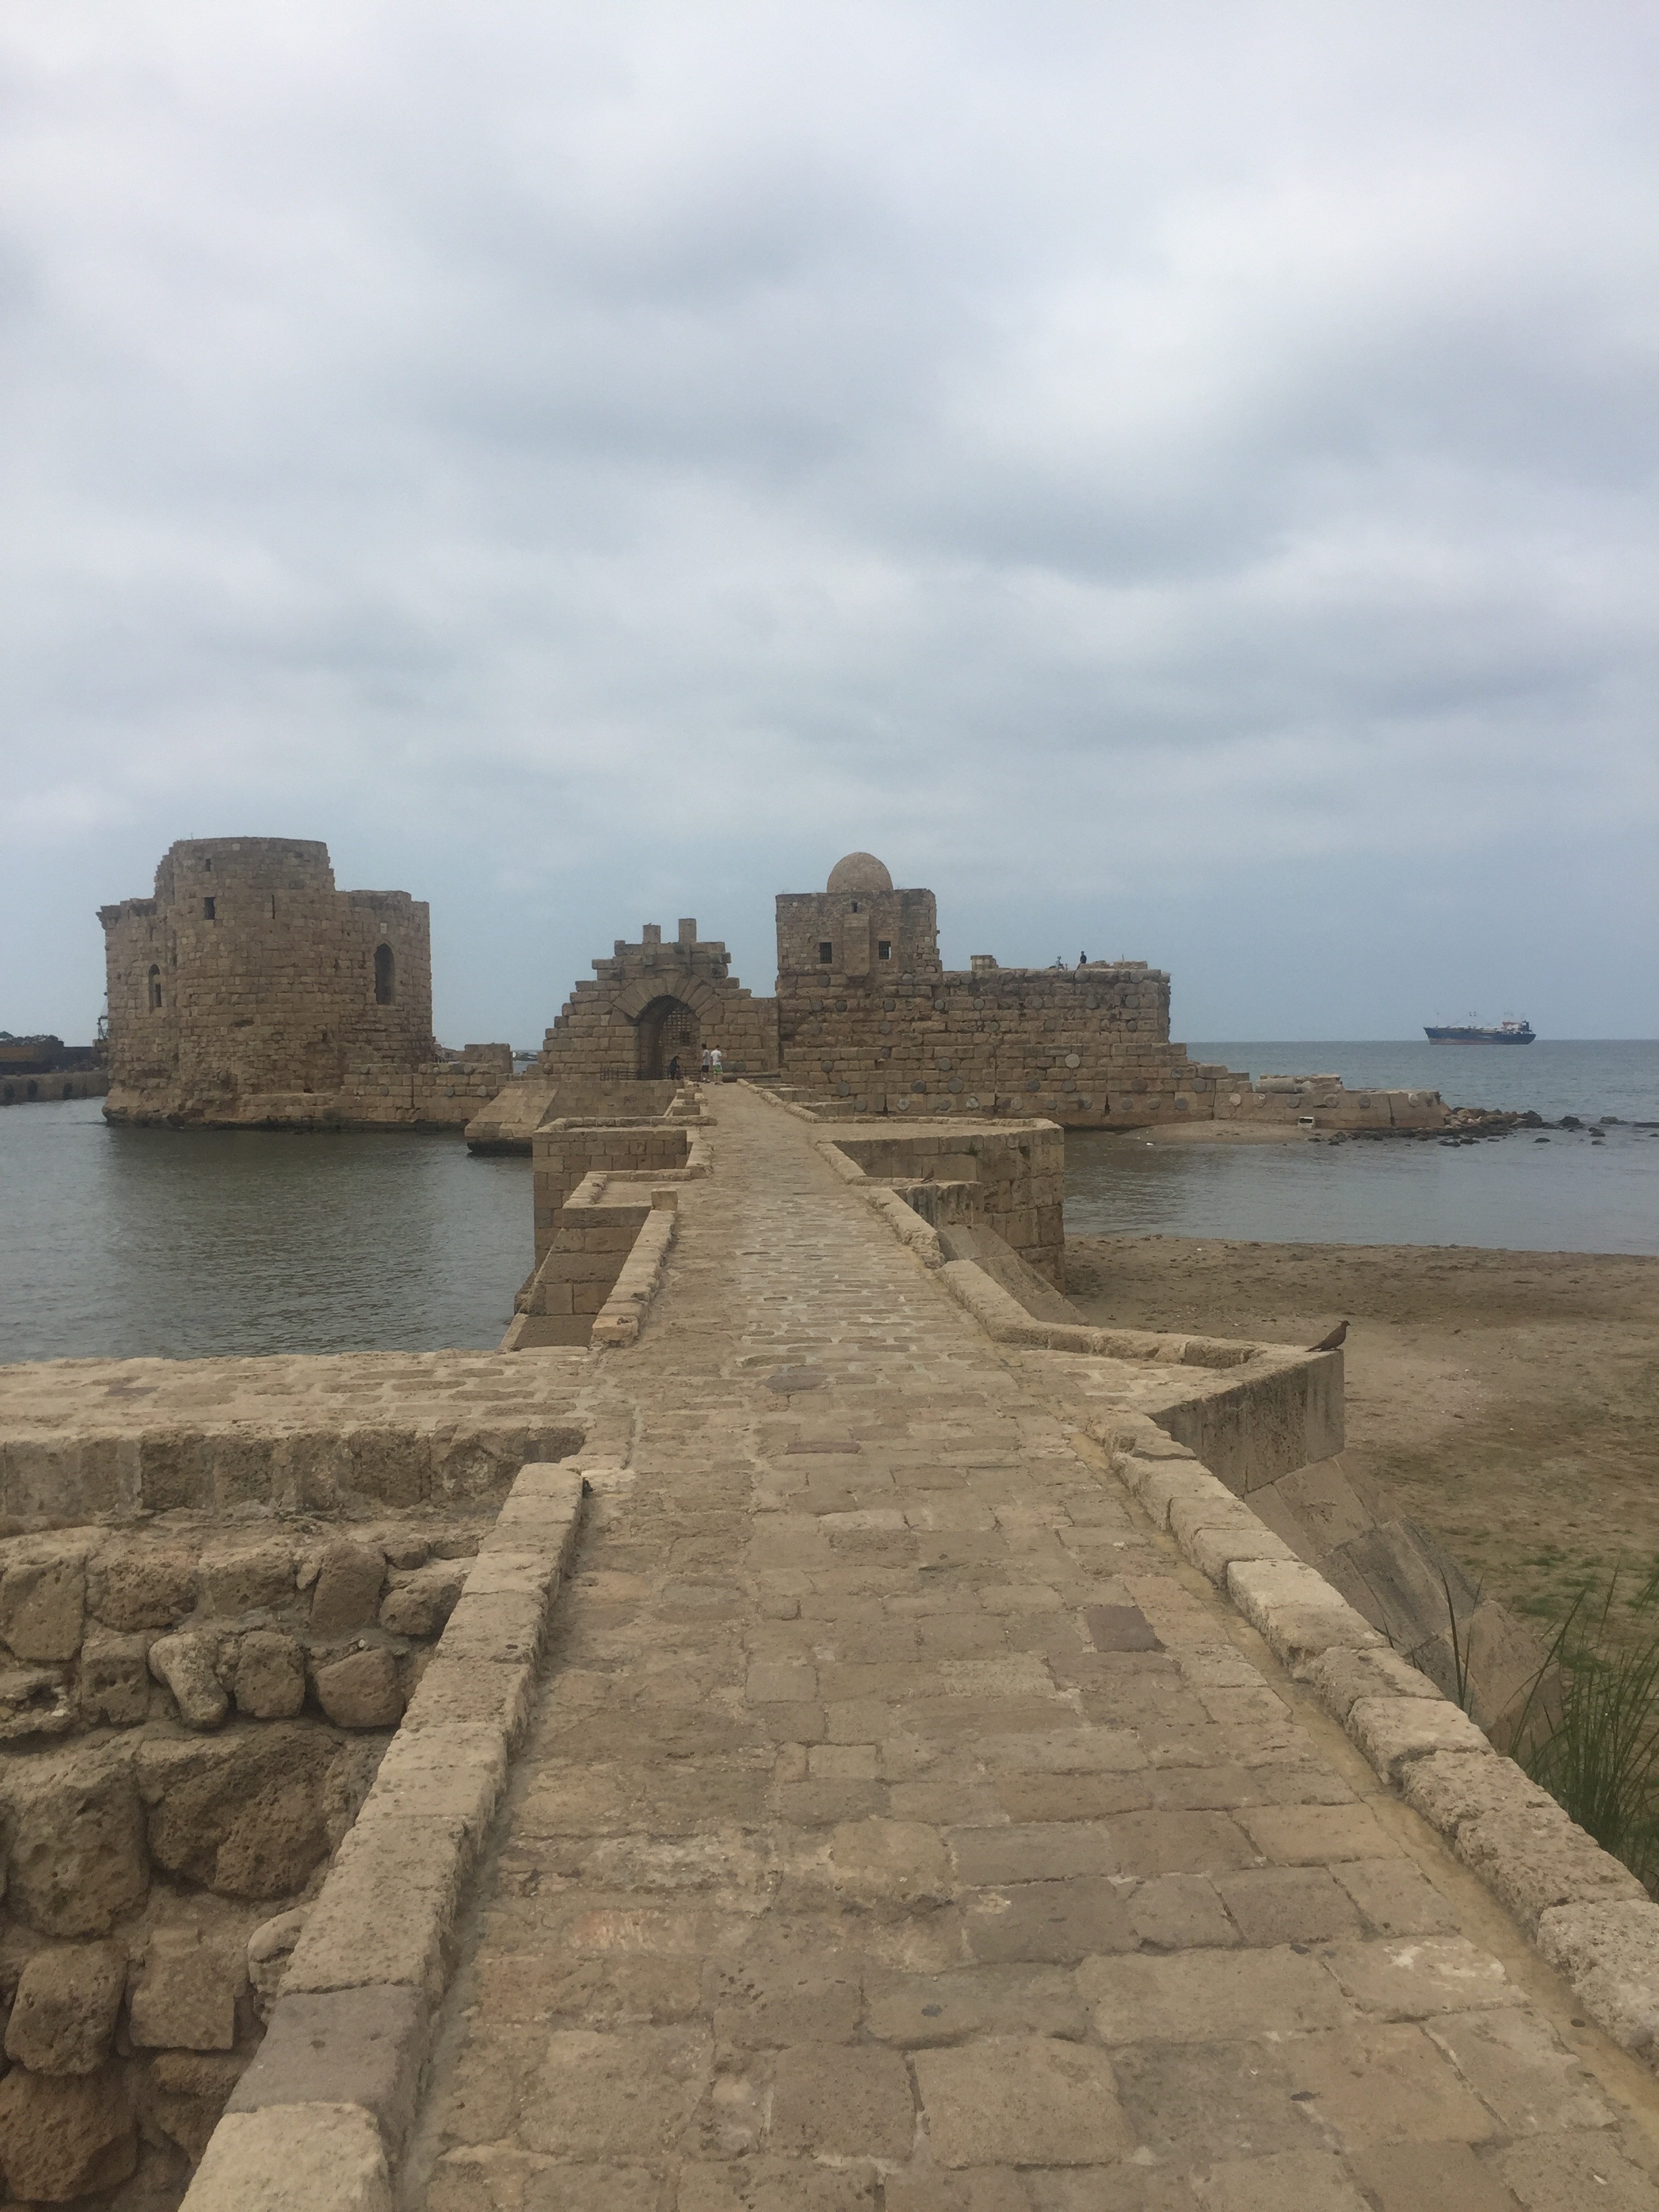 Beautiful fishing fort from the biblical era.